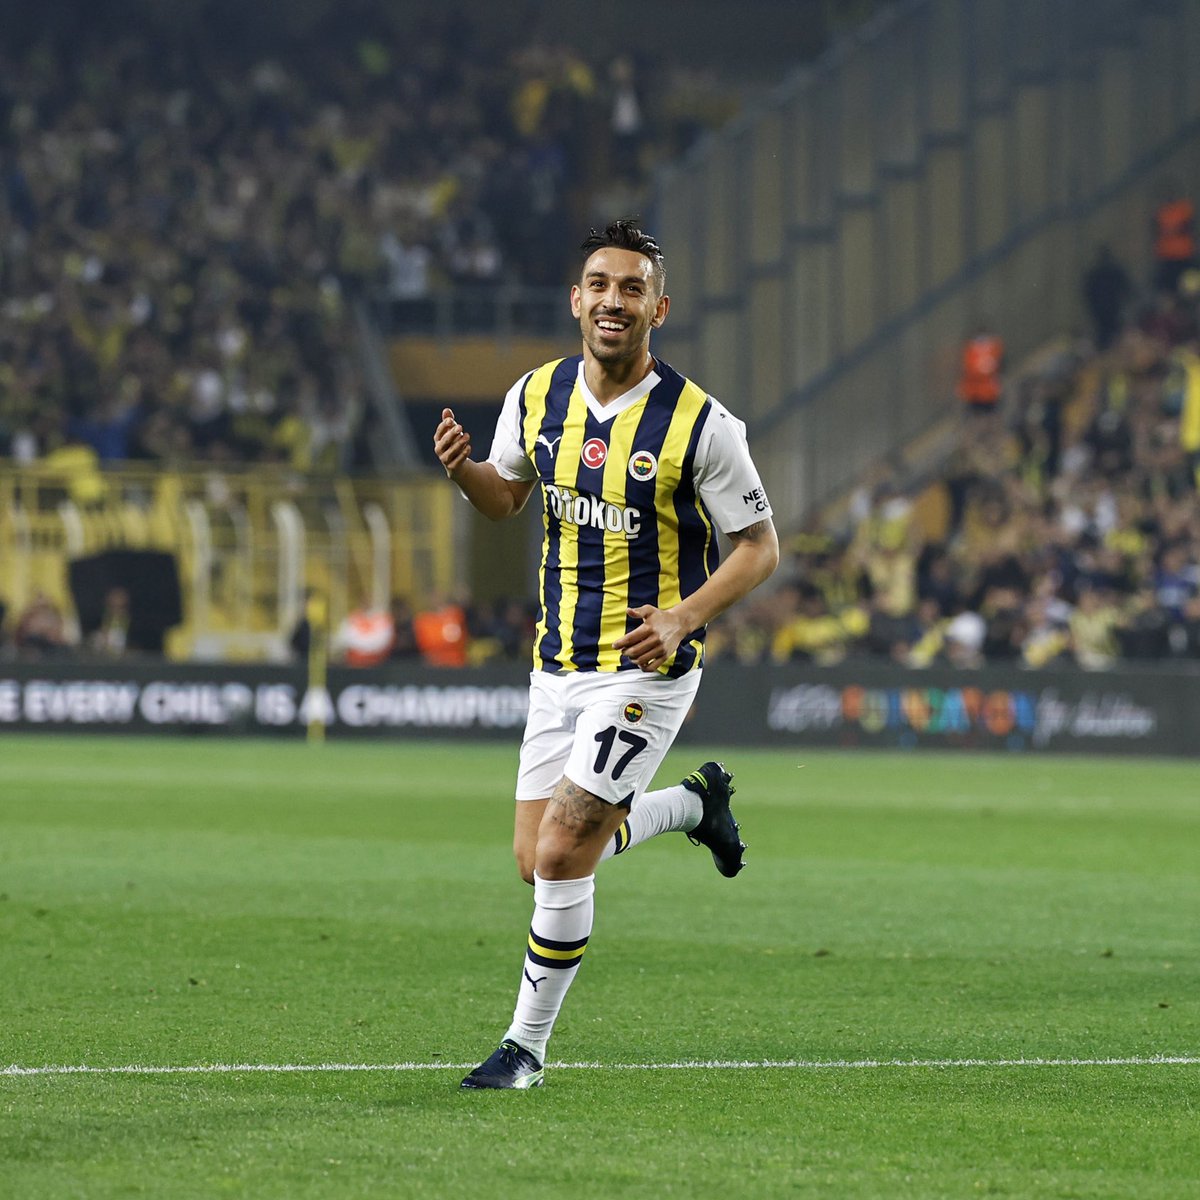 İLK YARI SONUCU : Fenerbahçe : 1 - Olympiakos : 0 #FenerinMaçıVar #FBvOLY